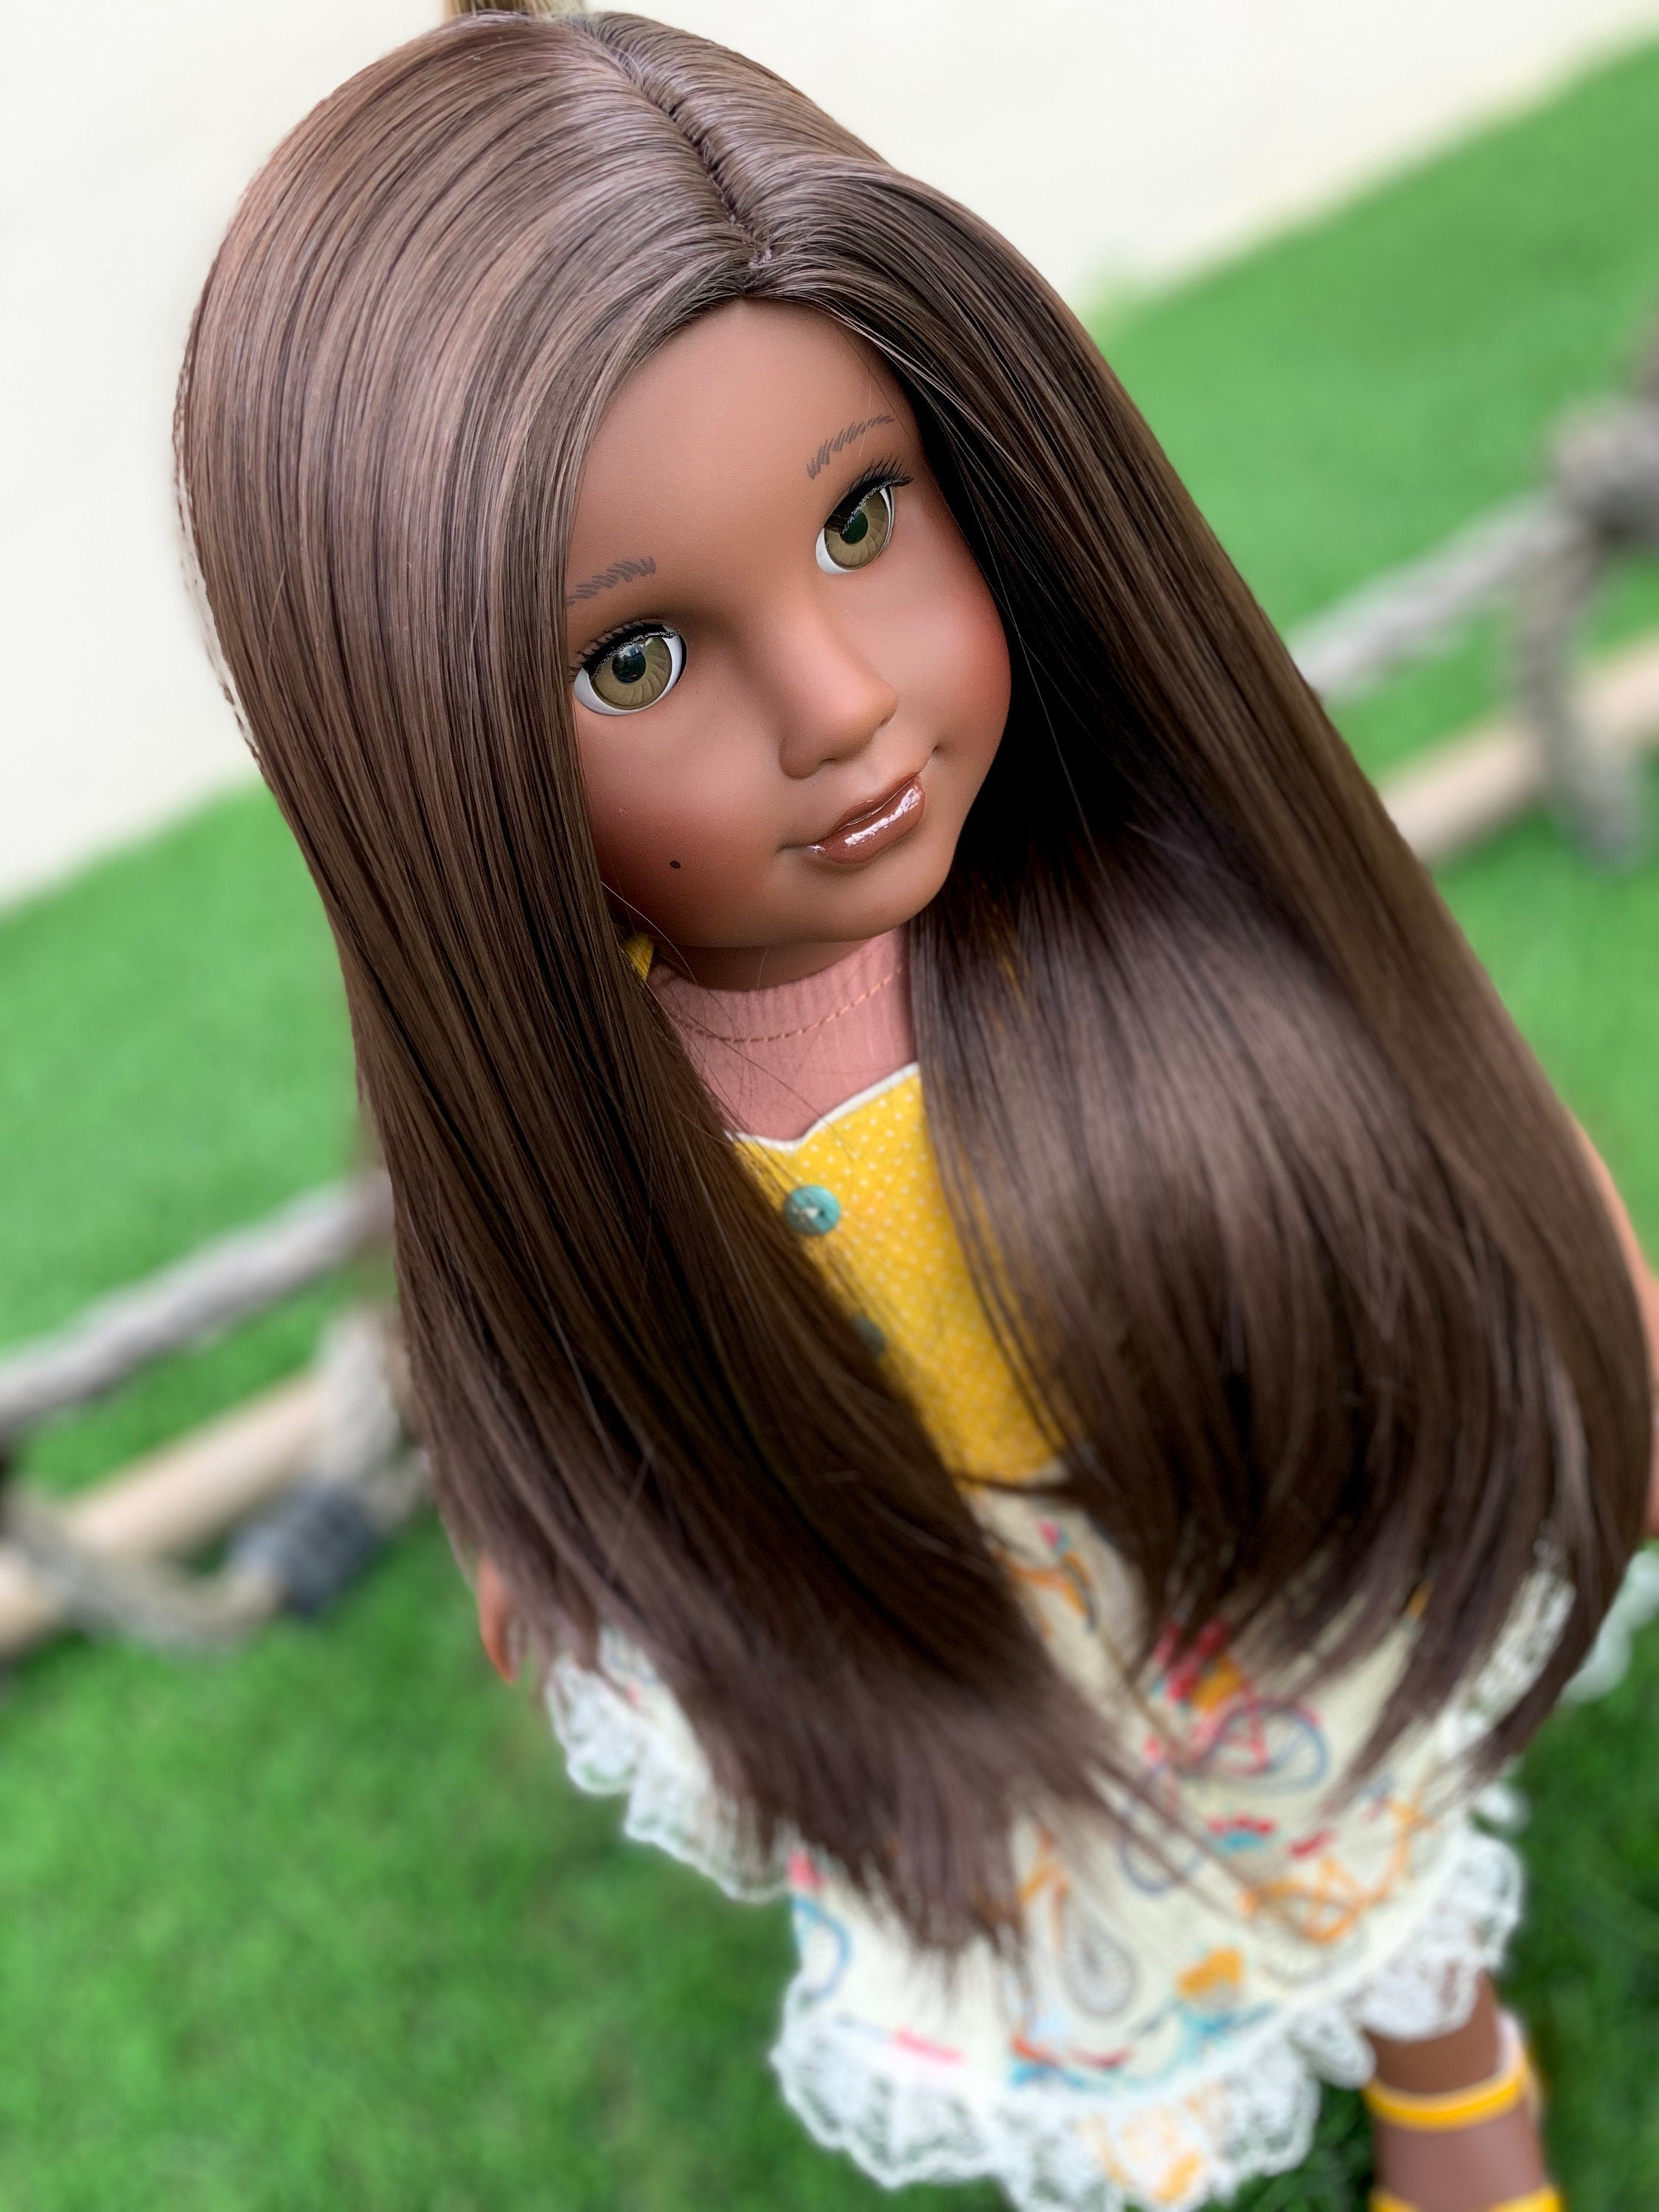 Custom doll wig for 18" American Girl Dolls - Heat Safe - Tangle Resistant - fits 10-11" head size of 18" dolls OG Blythe BJD Gotz Brown